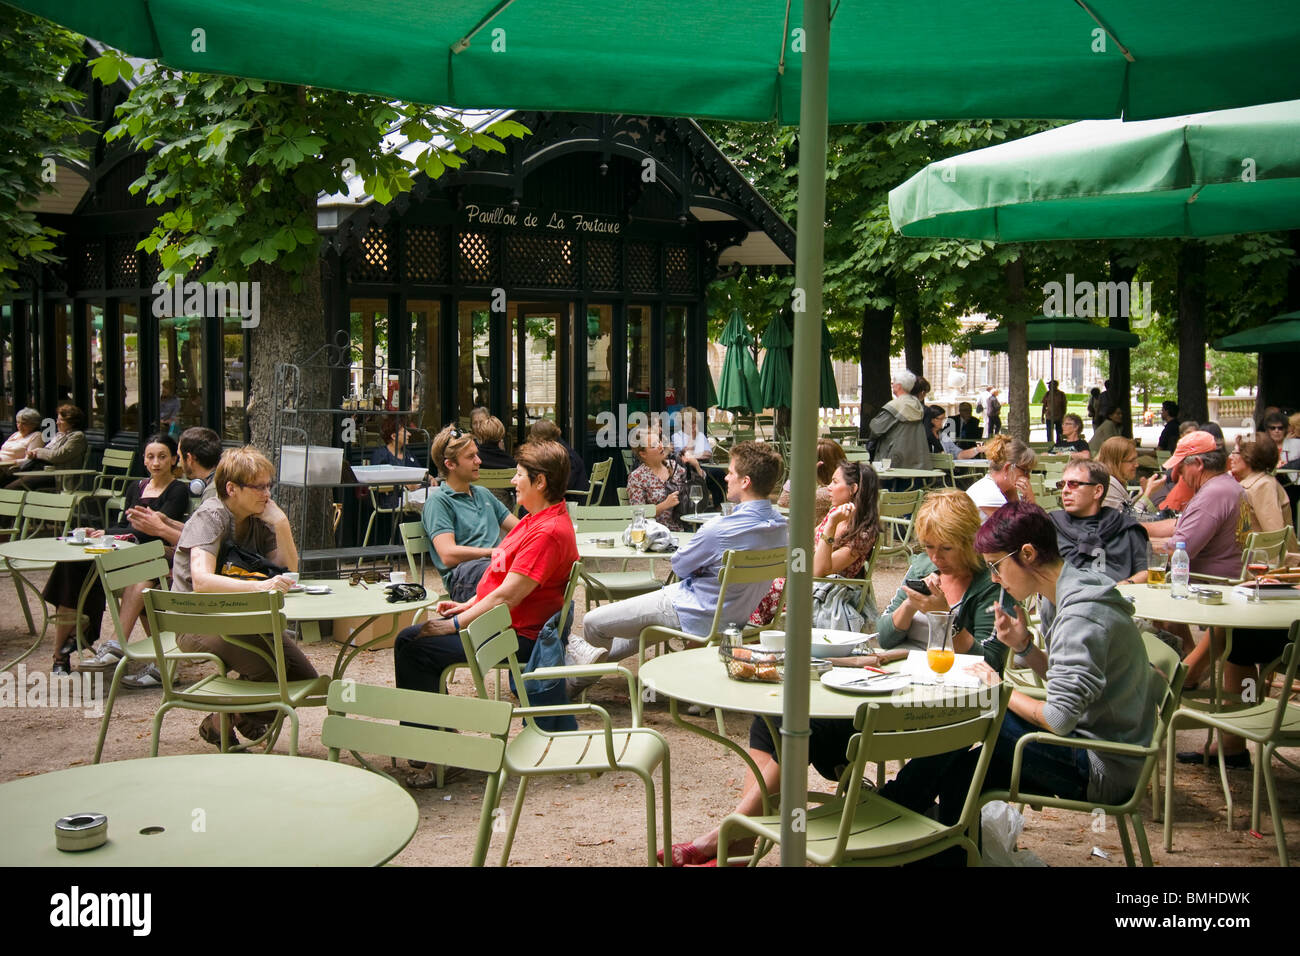 Parisians enjoy a sunny day in Parc du Luxembourg, Paris, France Stock Photo